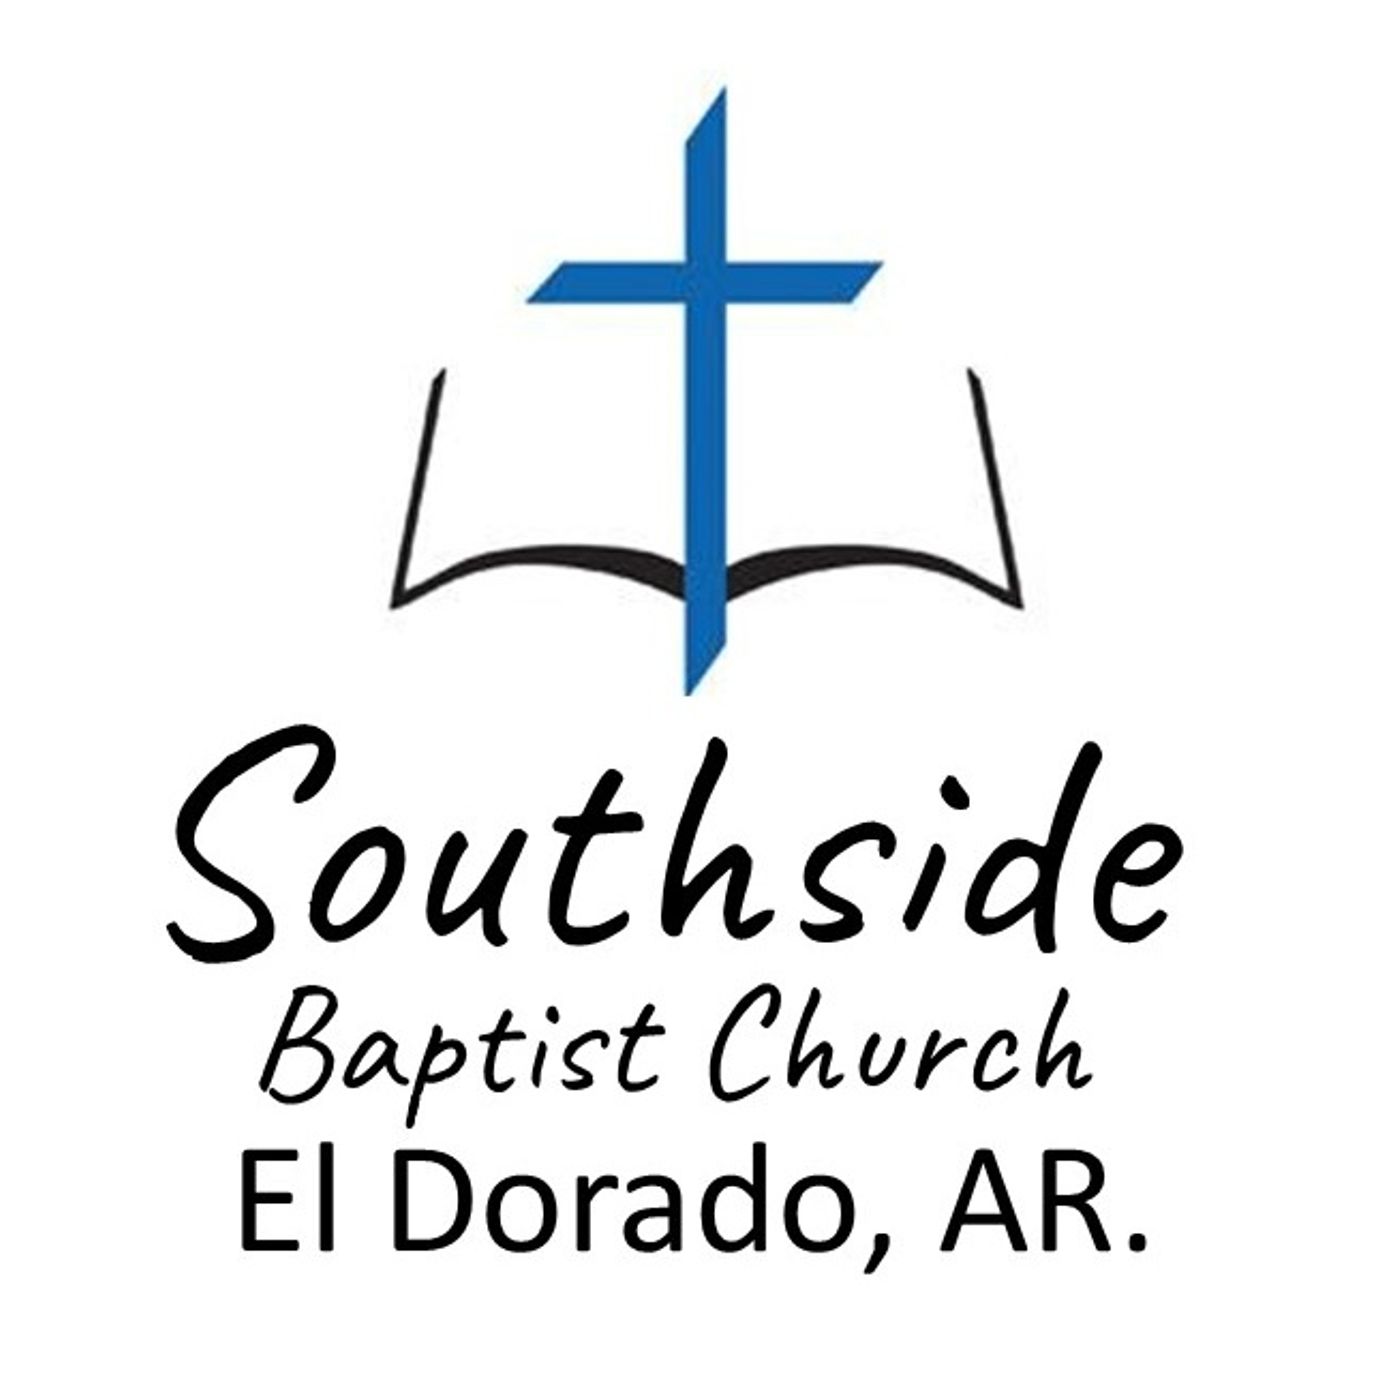 Southside Baptist Church of El Dorado, Arkansas